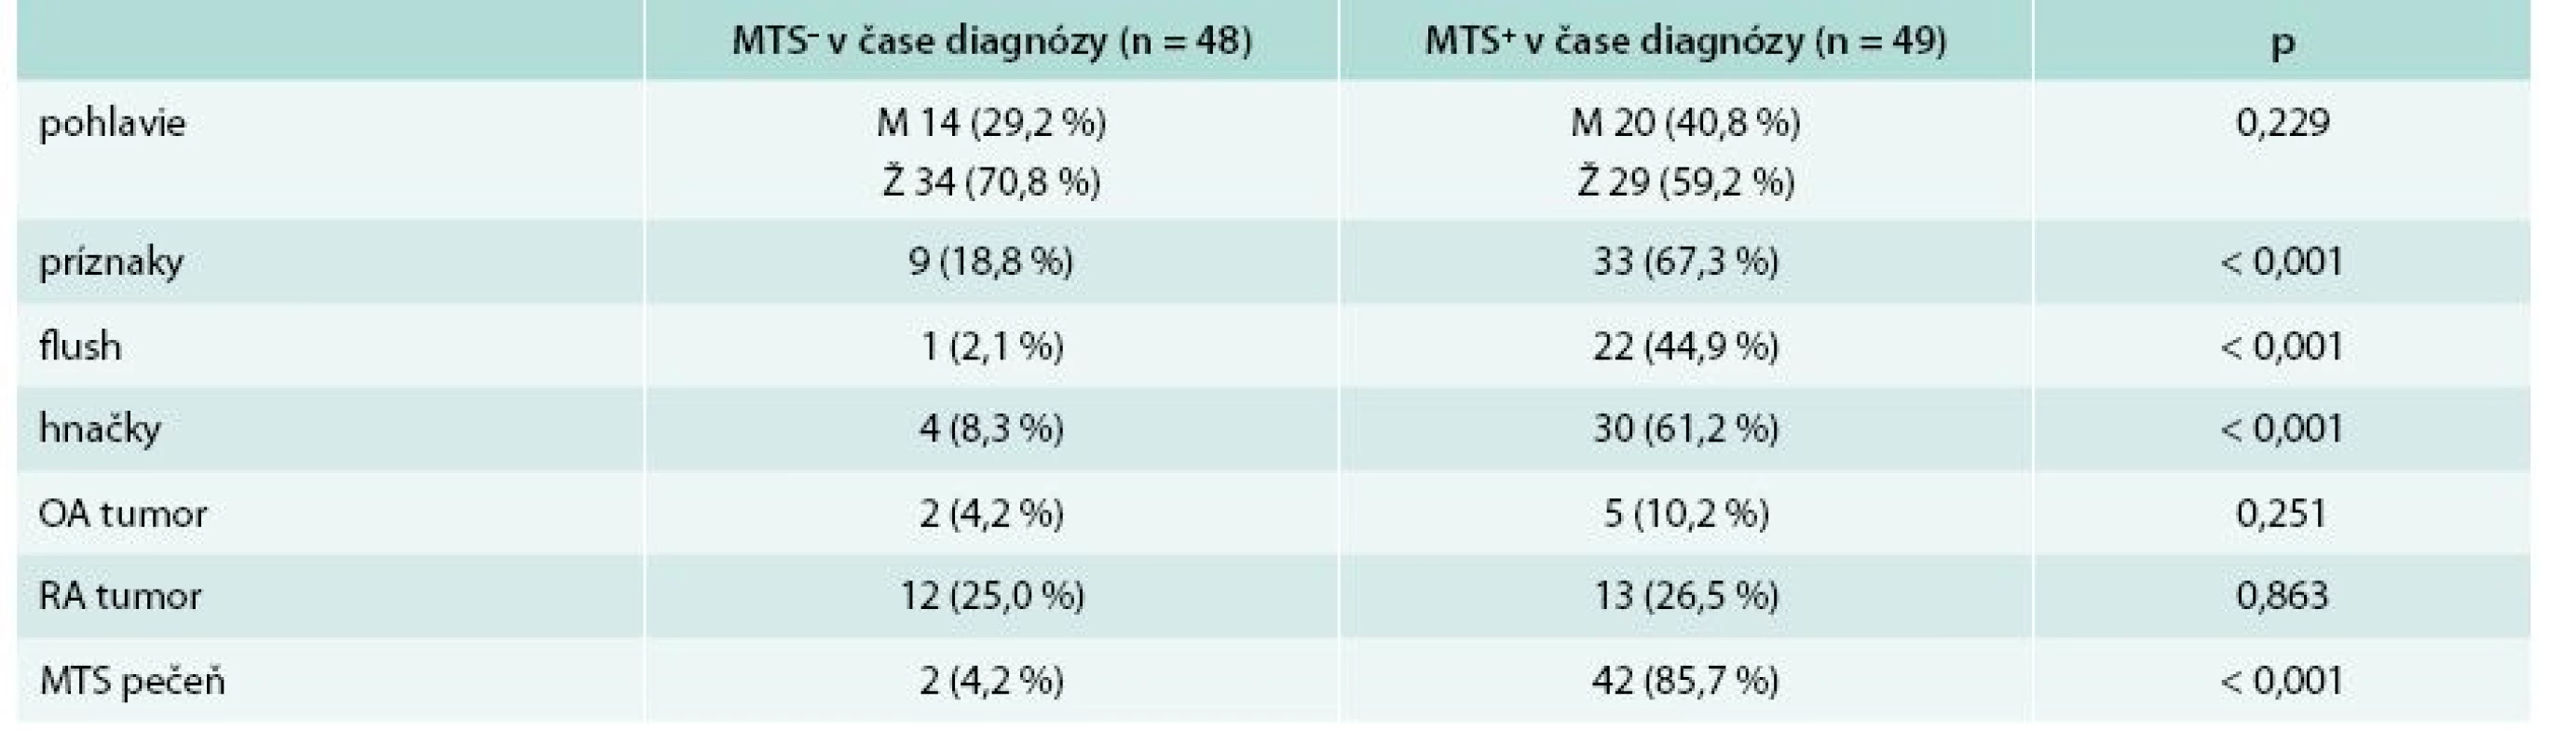 Základná charakteristika súboru + základná klinická charakteristika s ohľadom na výskyt metastáz (MTS) v čase stanovenia diagnózy